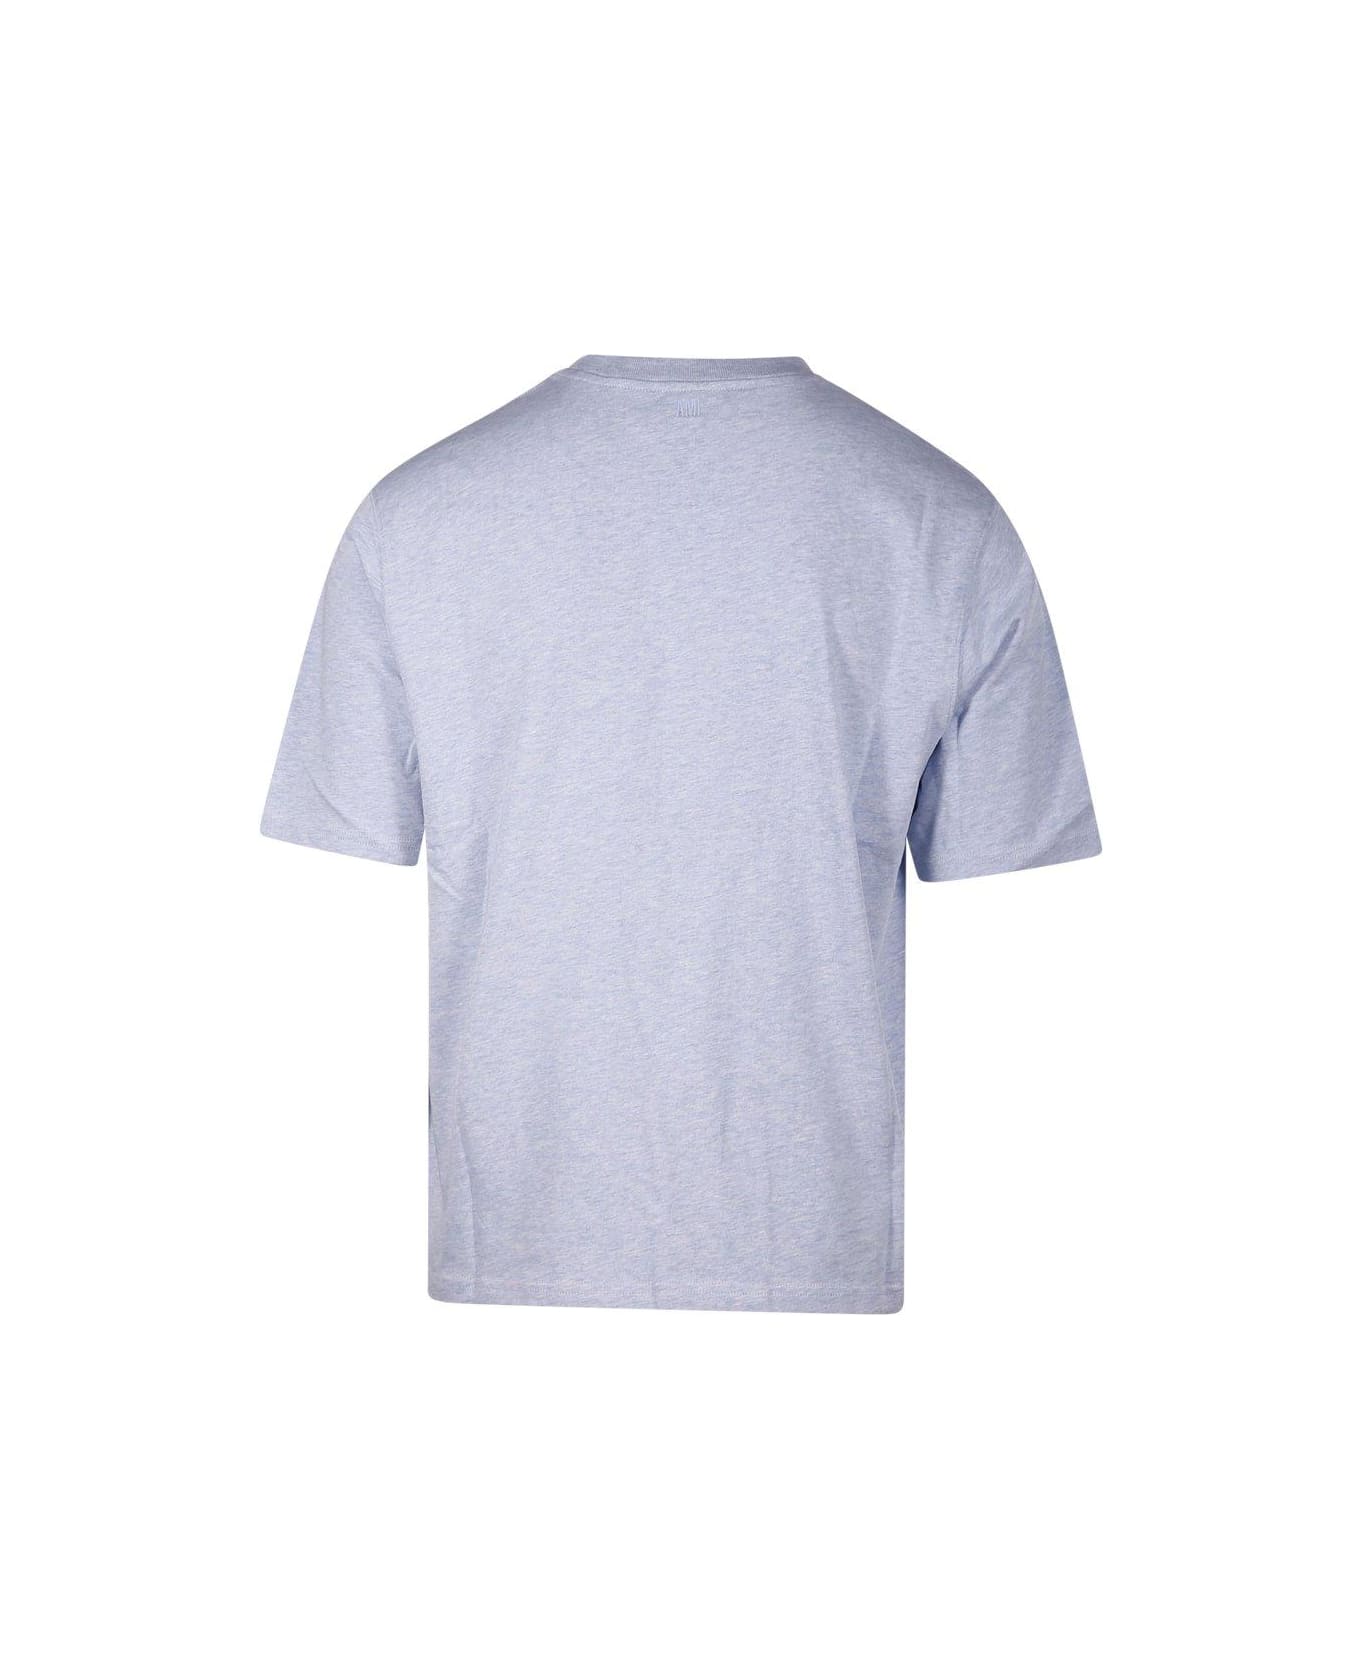 Ami Alexandre Mattiussi Paris De Coeur Logo Embroidered Crewneck T-shirt - Blue Tシャツ